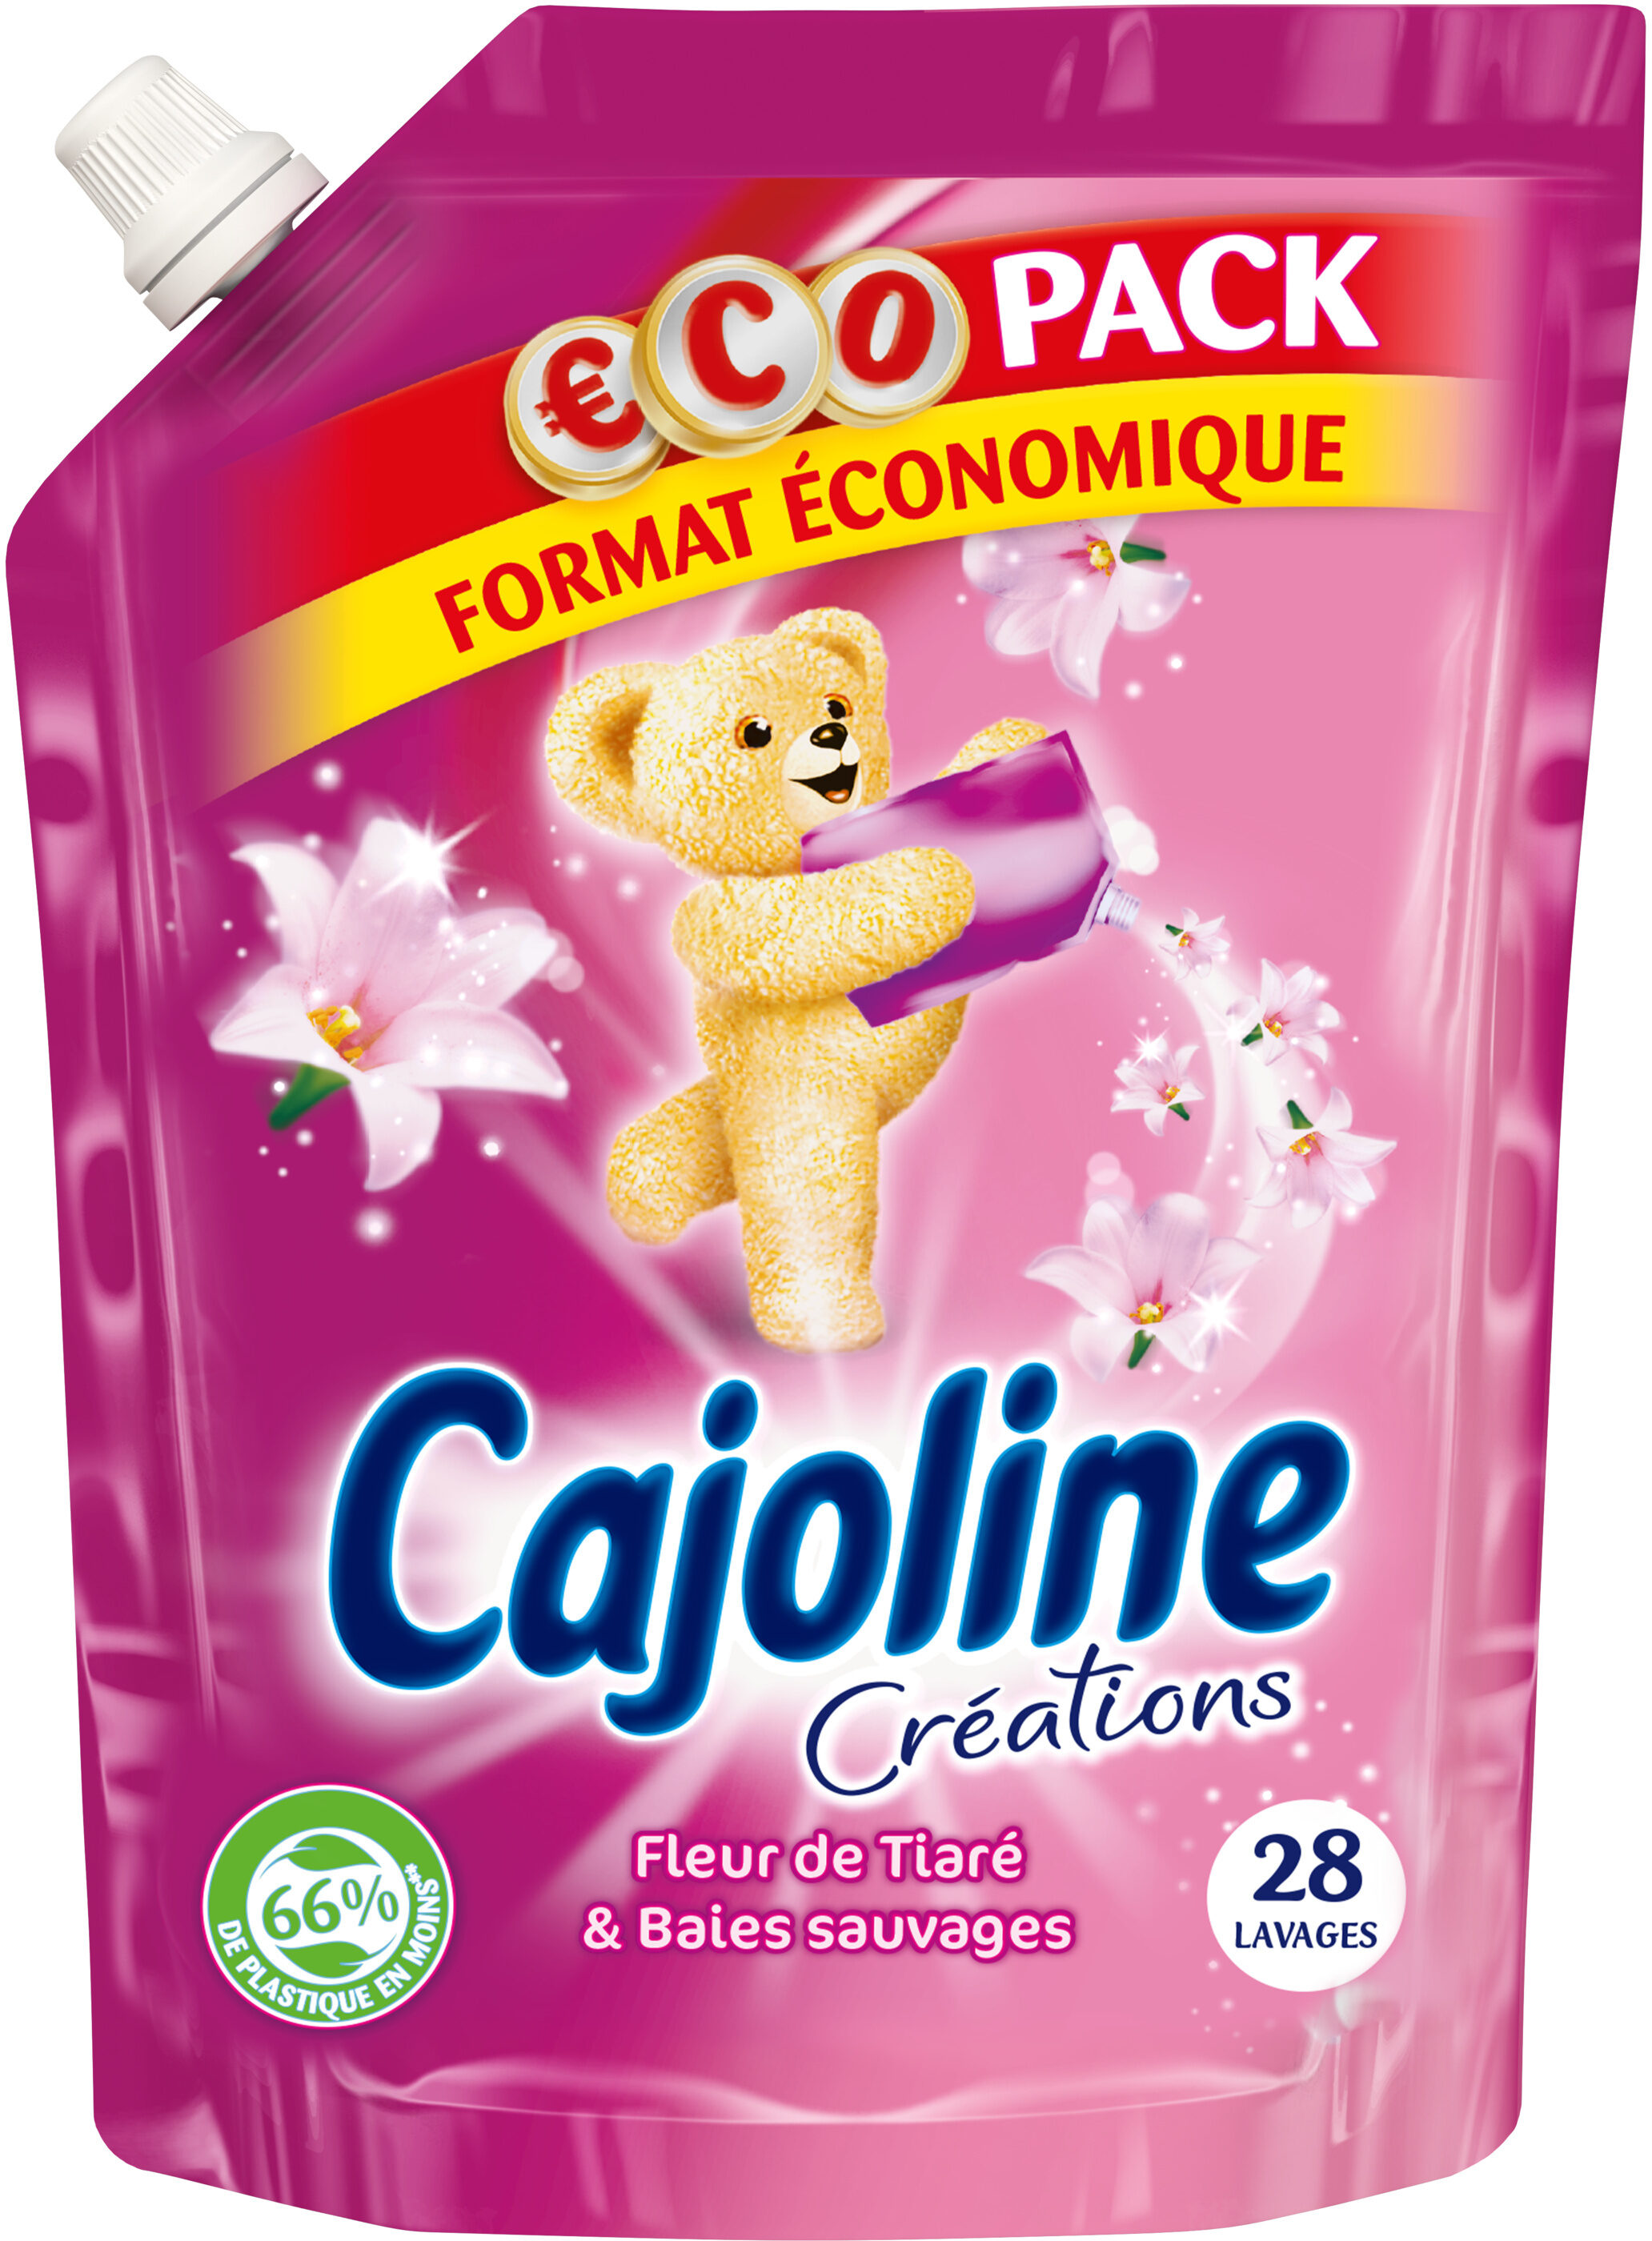 Cajoline Créations Adoucissant Concentré Fleur de Tiaré & Baies Sauvages Pack Eco - 700ml - 28 Lavages - Product - fr